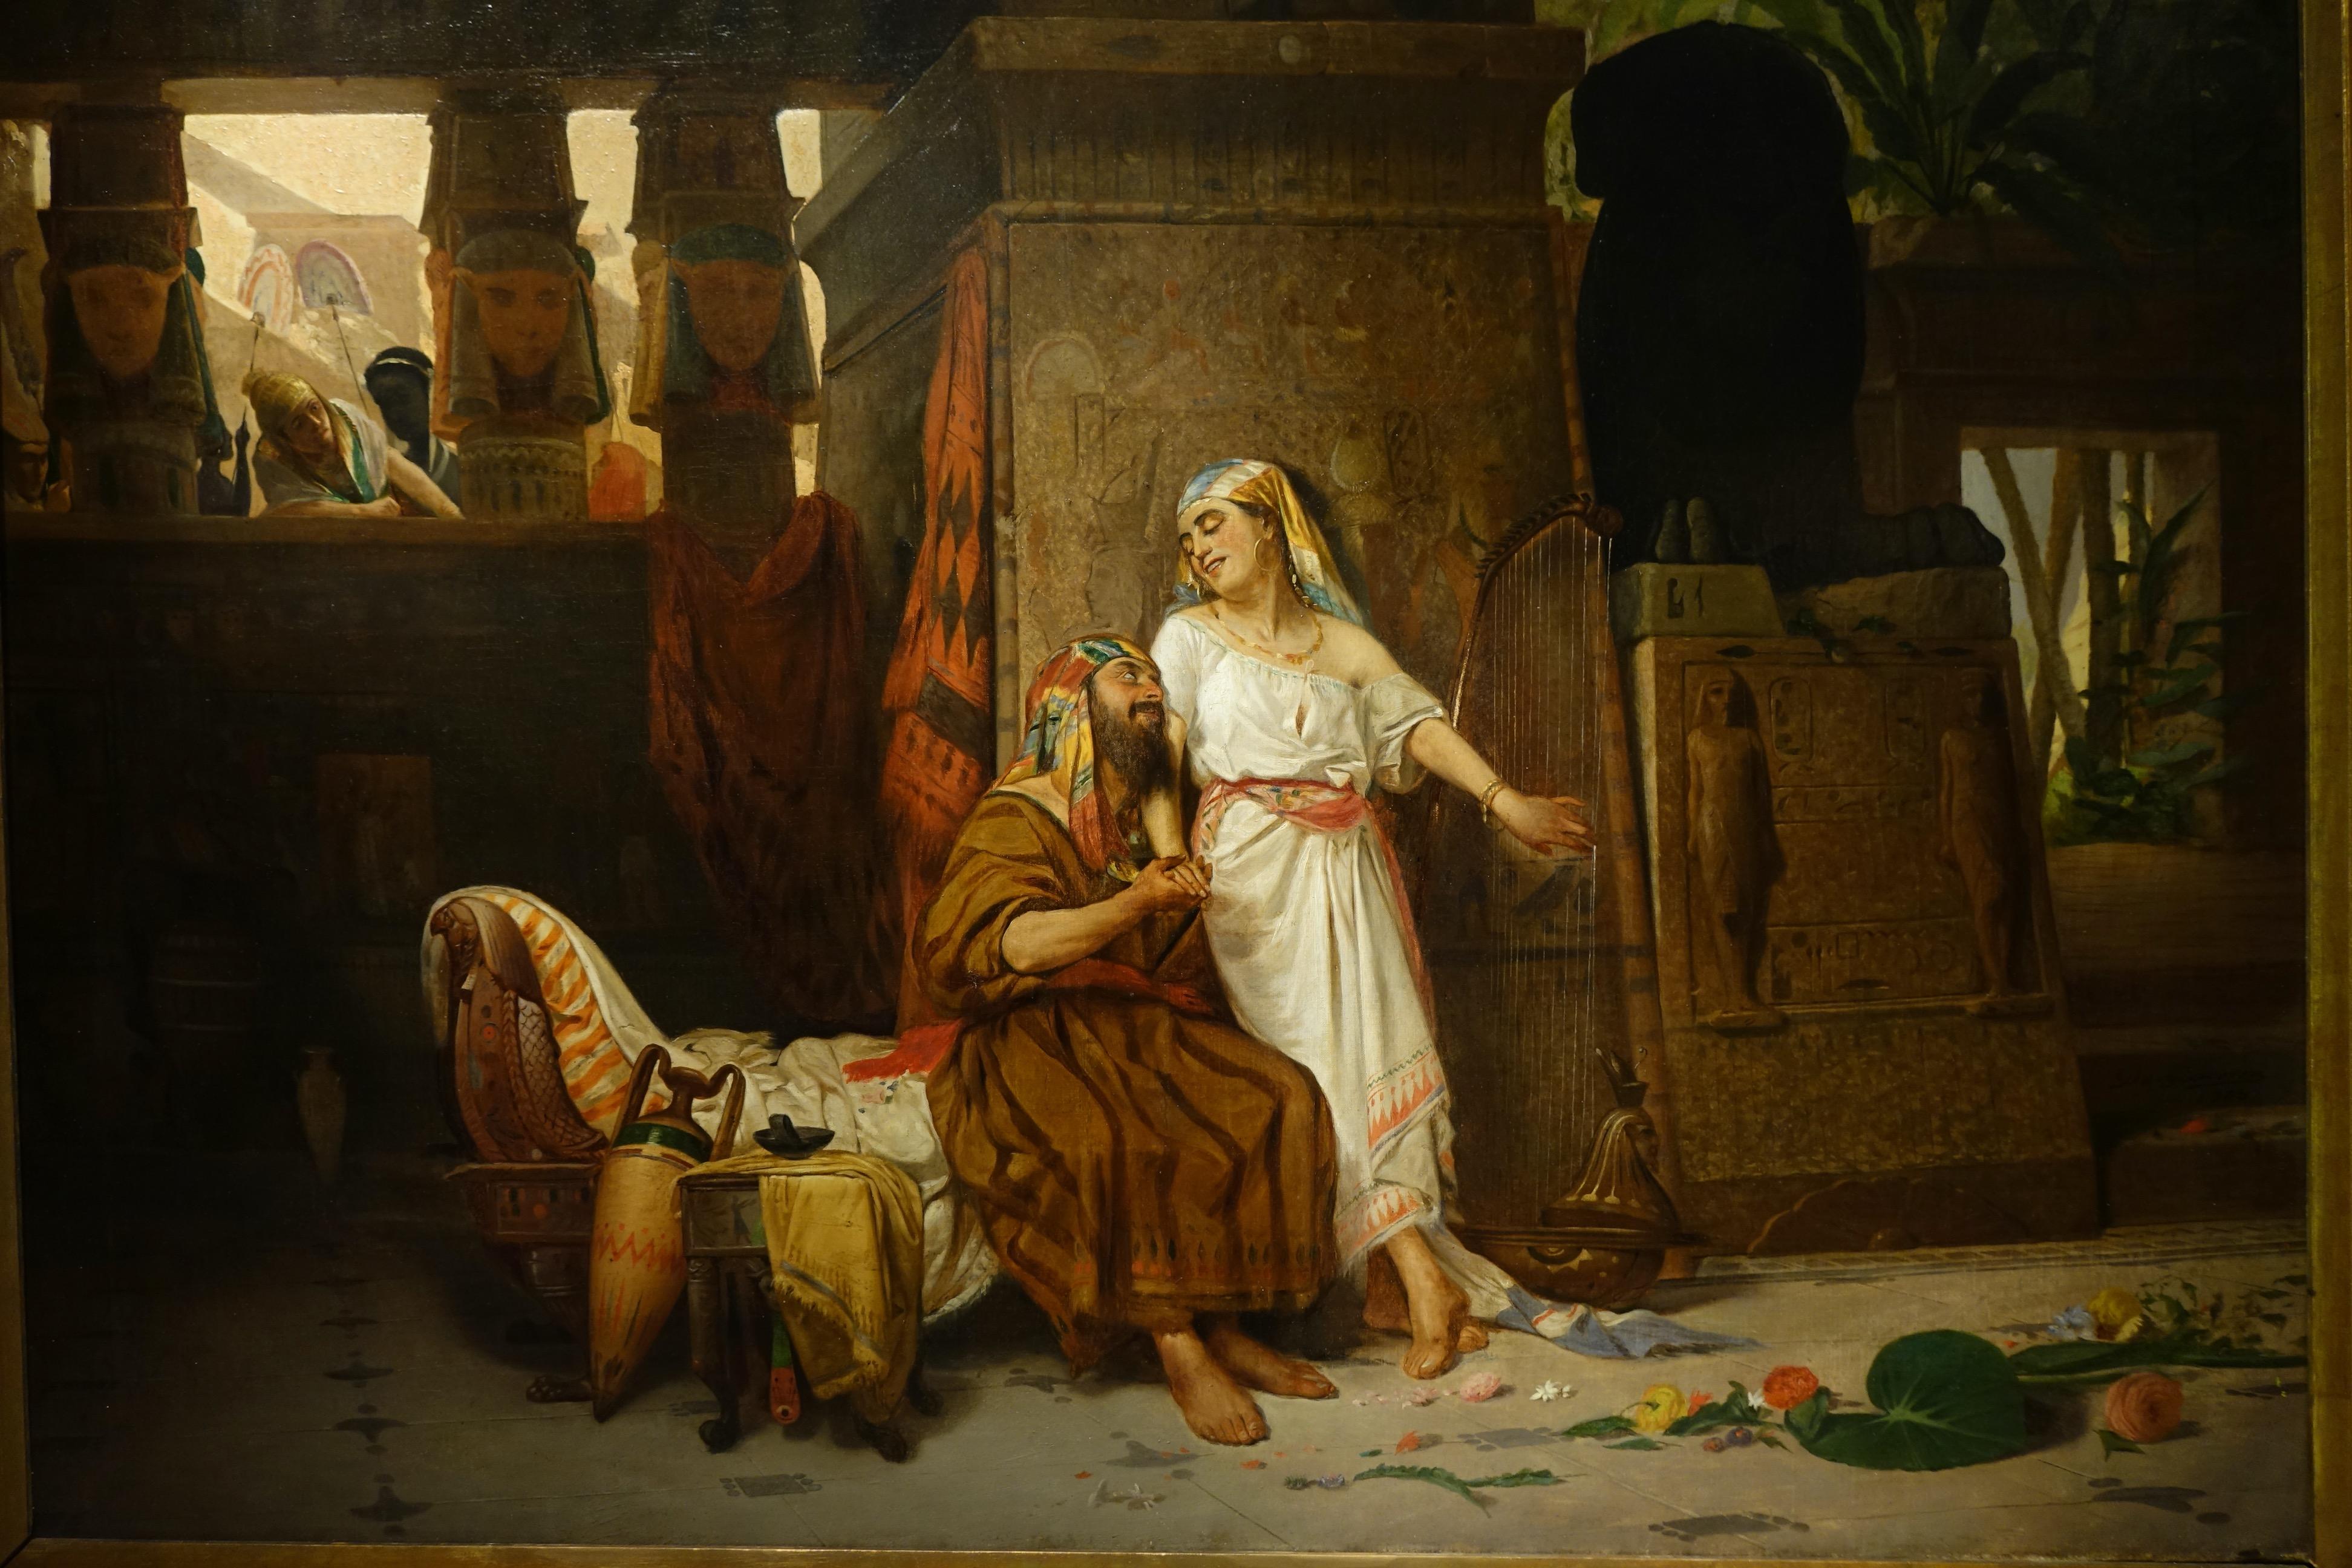 Canvas Genre Scene in Ancient Egypt, Eugenio De Giacomi, 1888